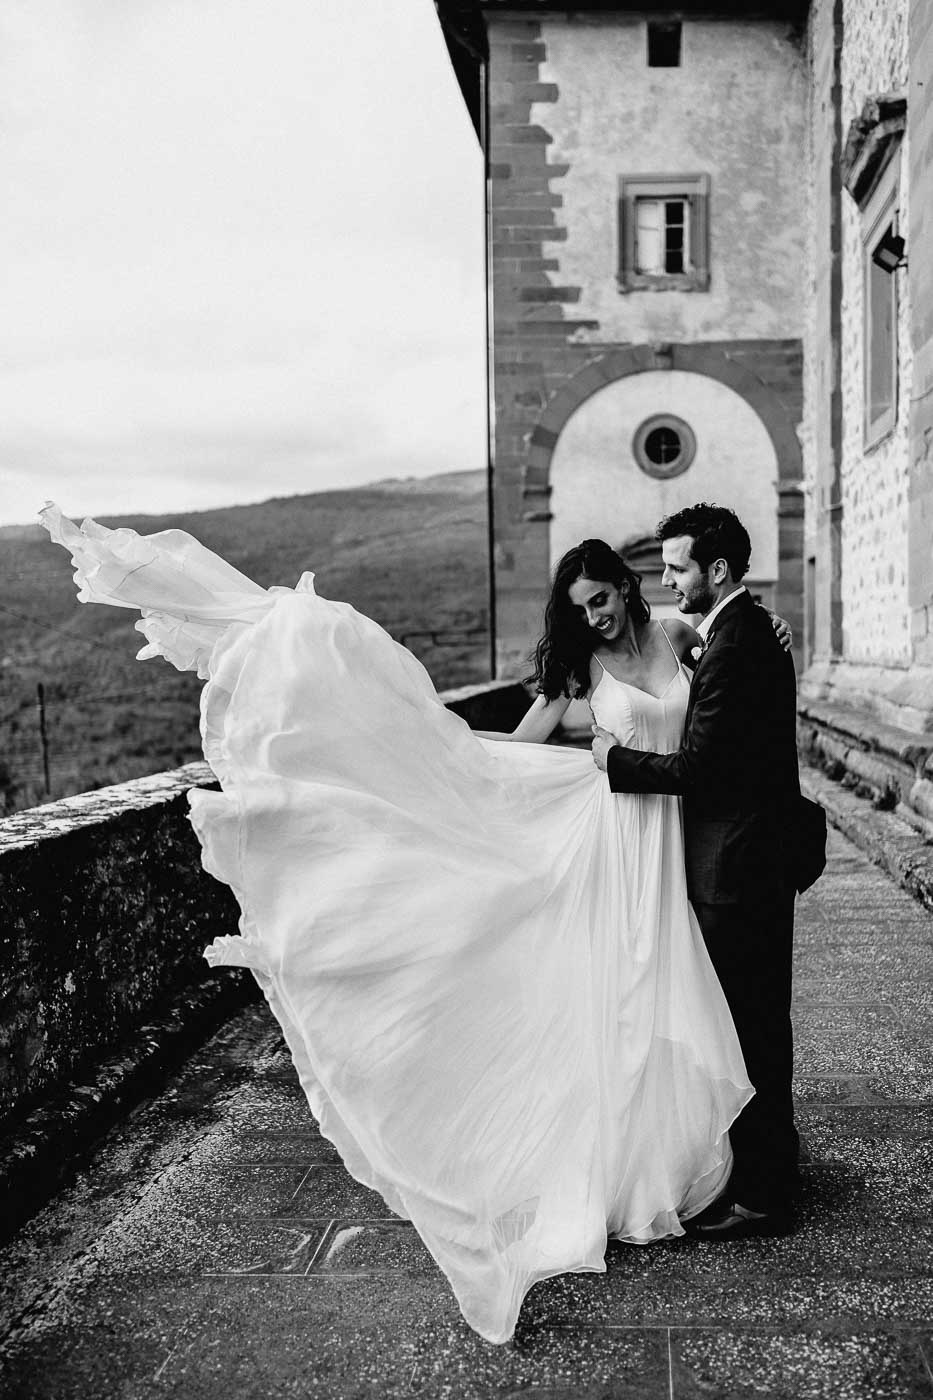 italian wedding photographer tuscany florence eclusive creative photography 1001 72 WEDDING PHOTOGRAPHY